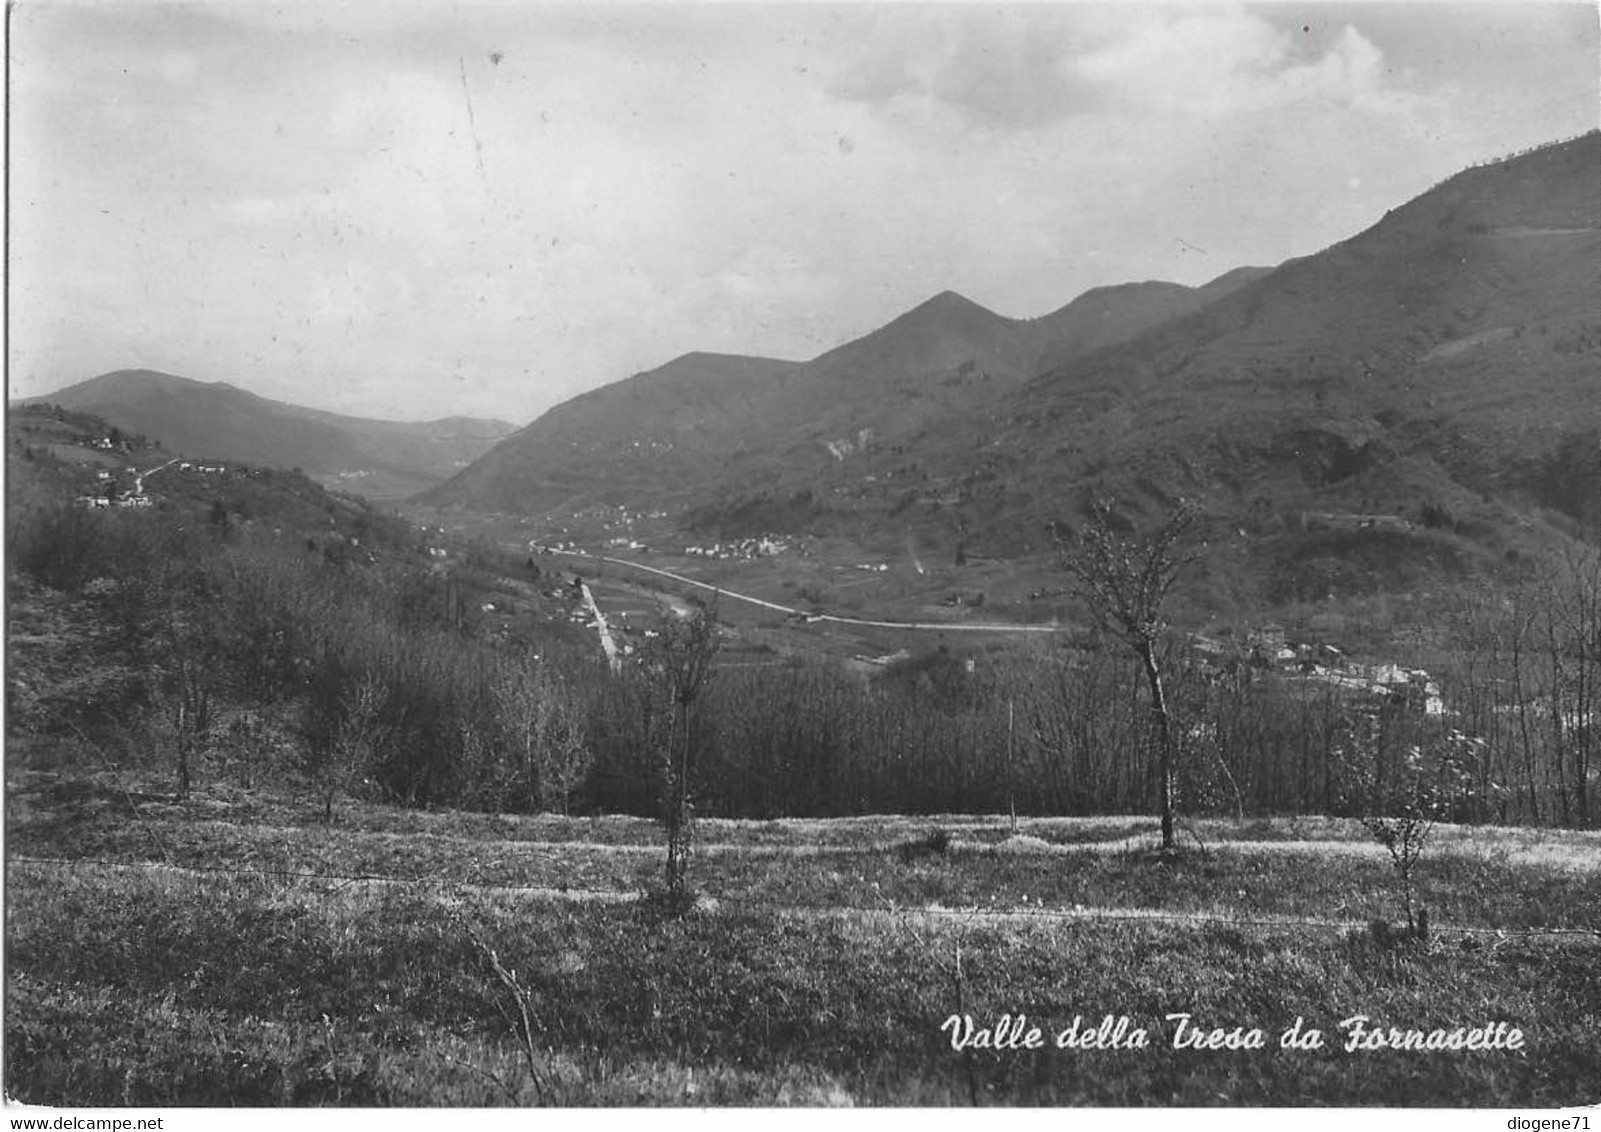 Valle Della Tresa Da Fornasette - Tresa